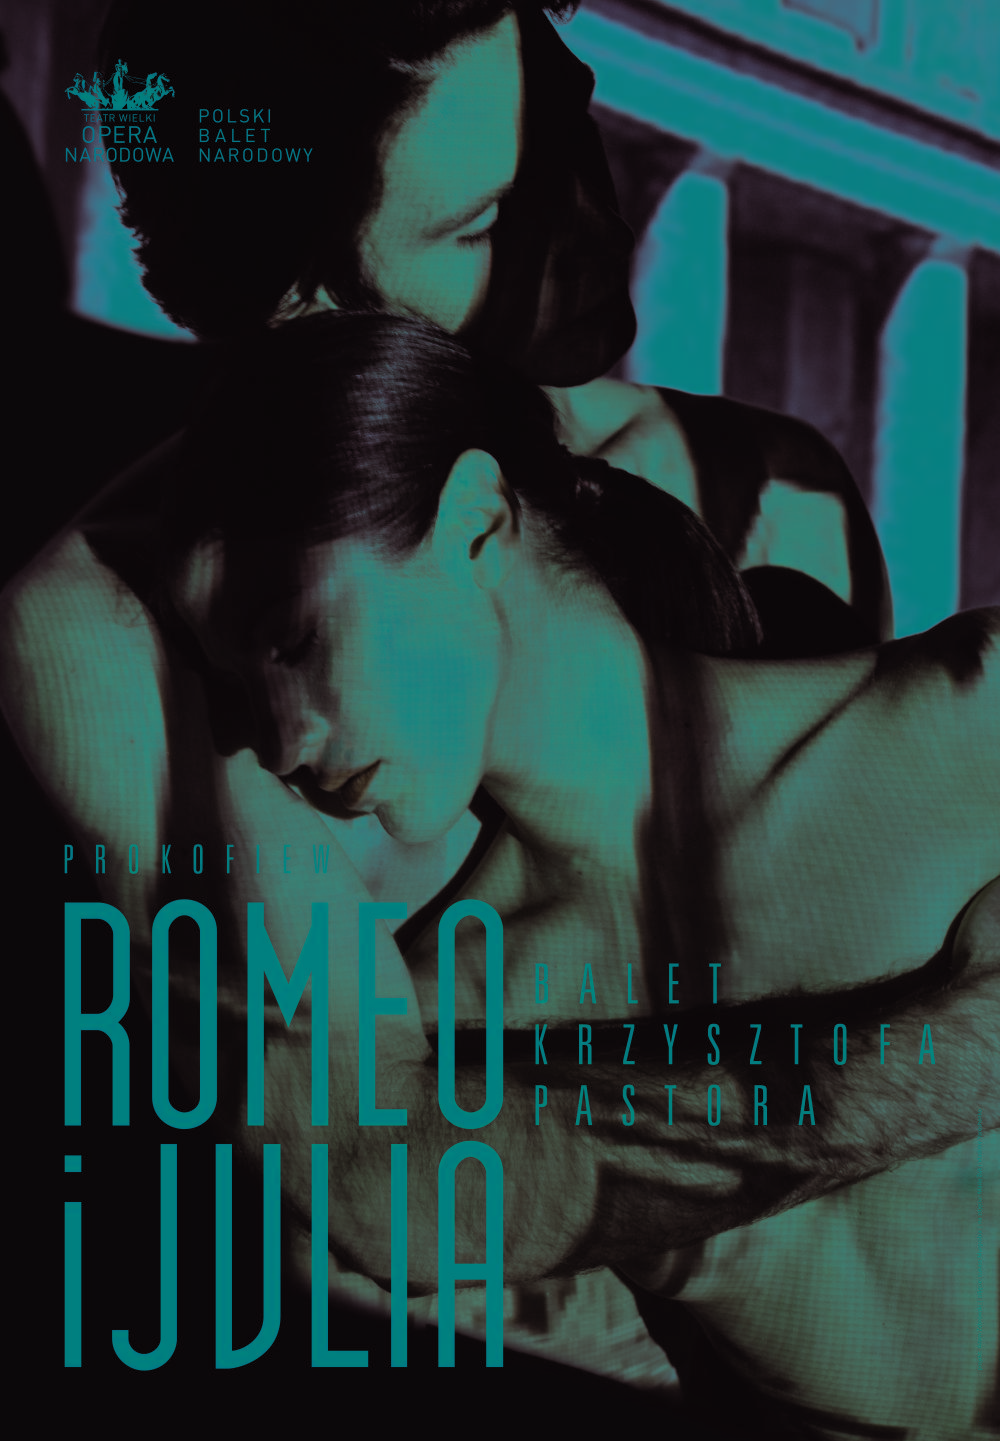 Plakat "Romeo i Julia" Siergiej Prokofiew / Krzysztof Pastor premiera 2014-03-07